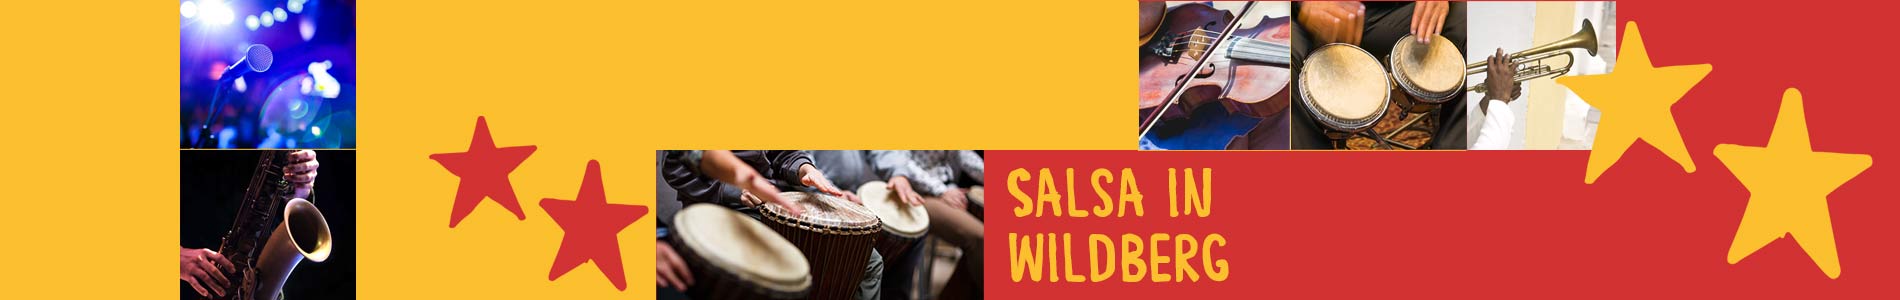 Salsa in Wildberg – Salsa lernen und tanzen, Tanzkurse, Partys, Veranstaltungen